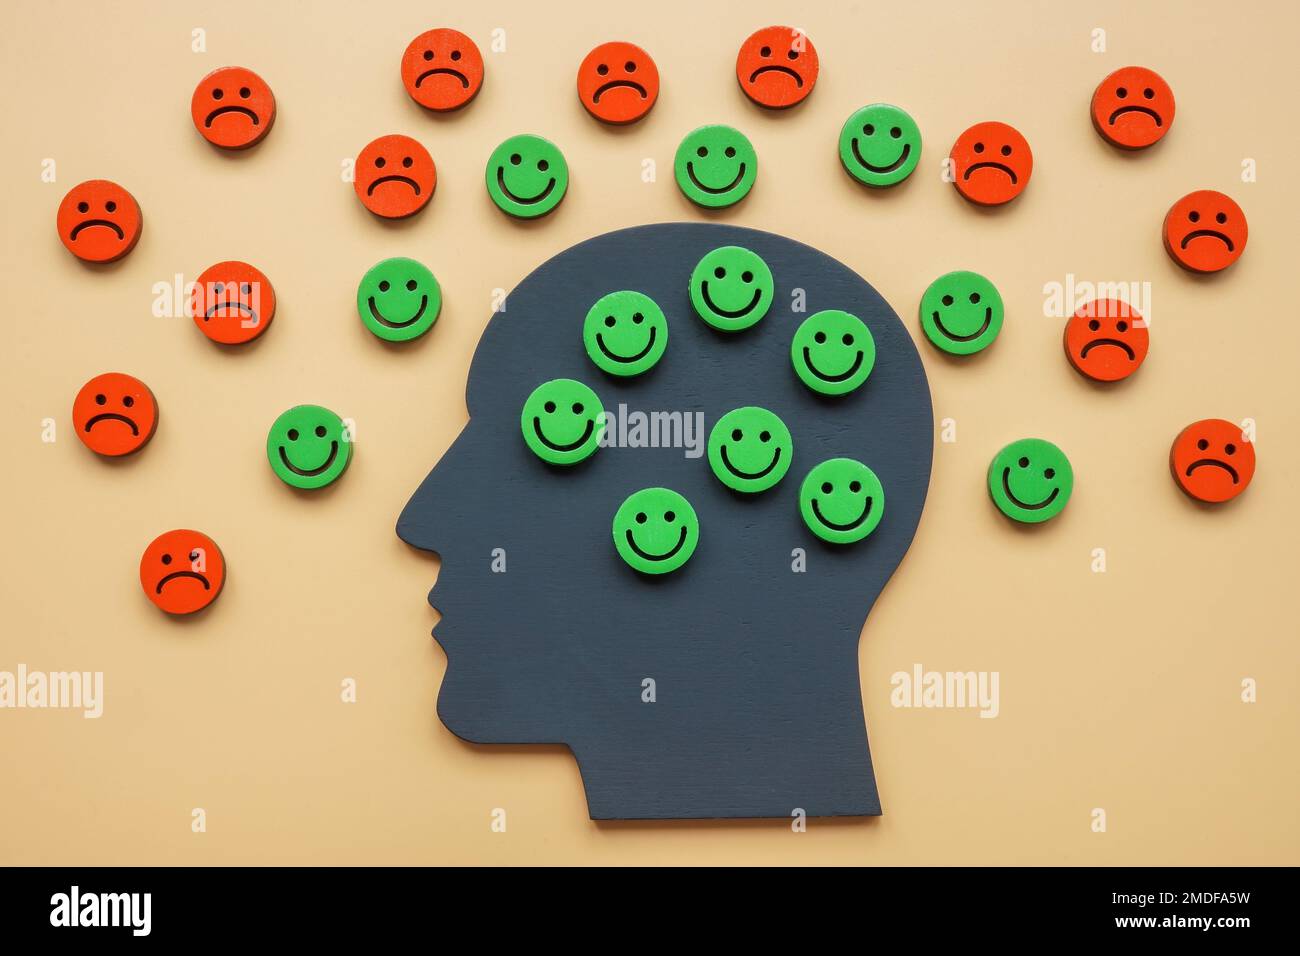 Una cabeza con emoticonos felices y un alrededor triste como símbolo de una actitud positiva. Foto de stock